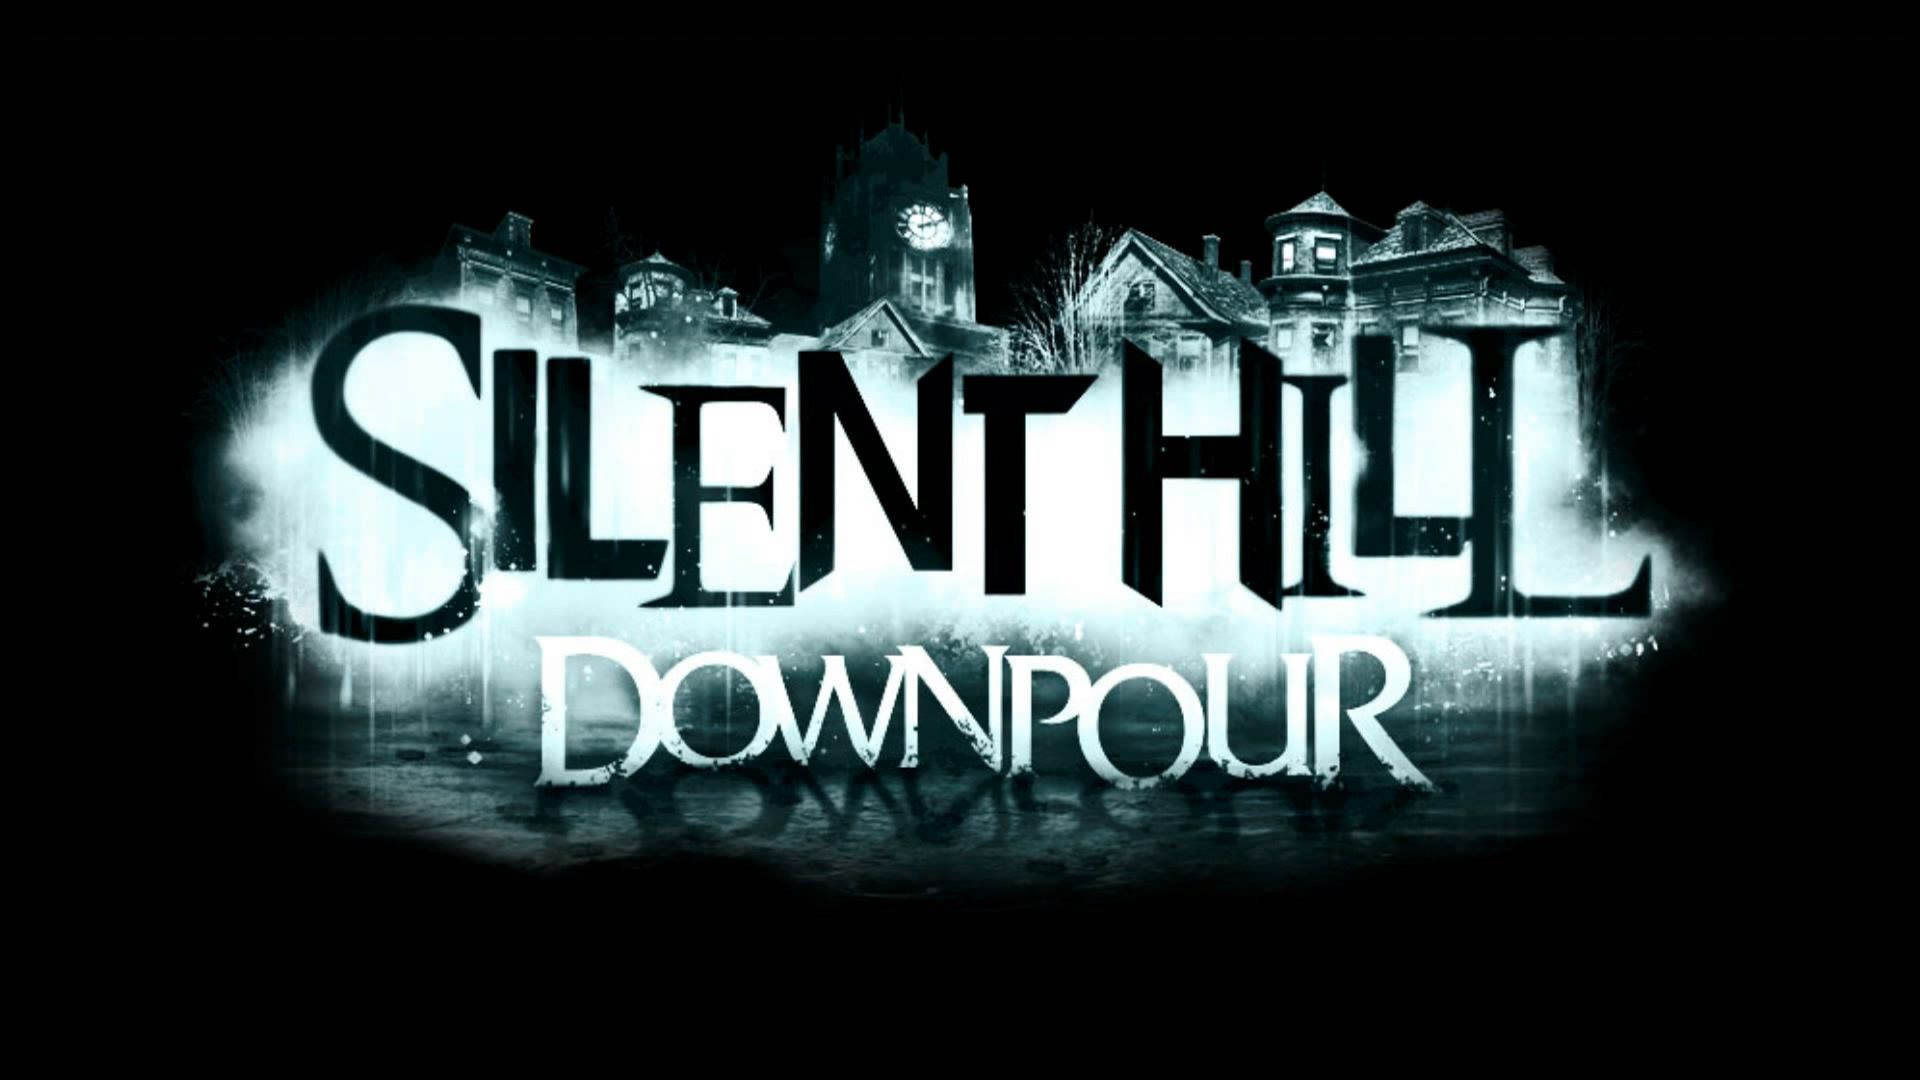 jogo silent hill downpour xbox 360 original